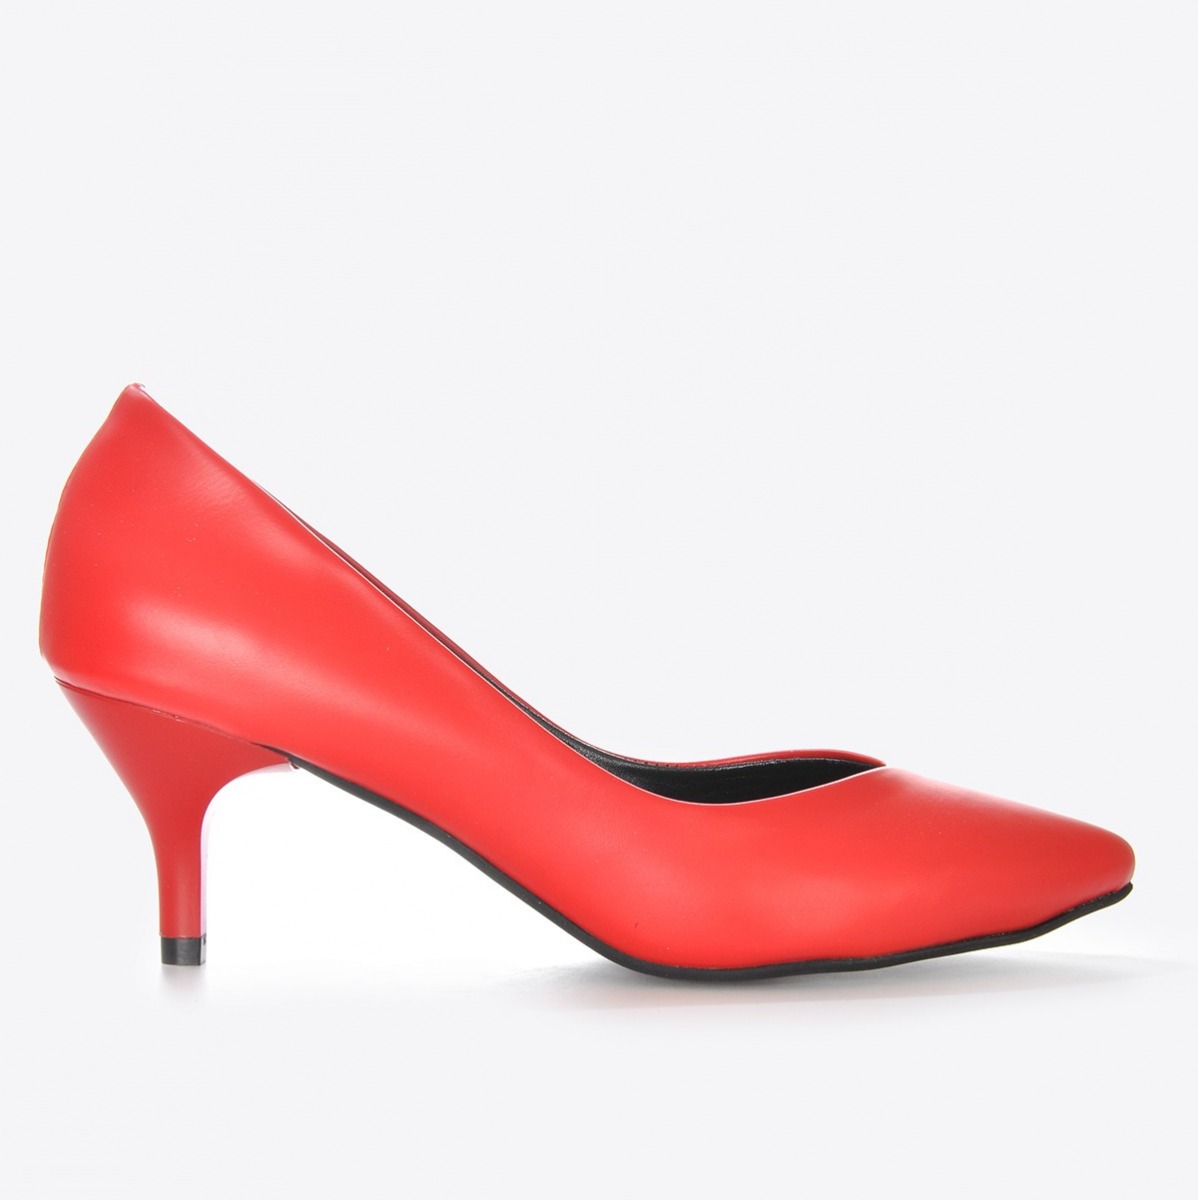 Flo Kadın Kırmızı Klasik Topuklu Ayakkabı VZN21-001Y. 2